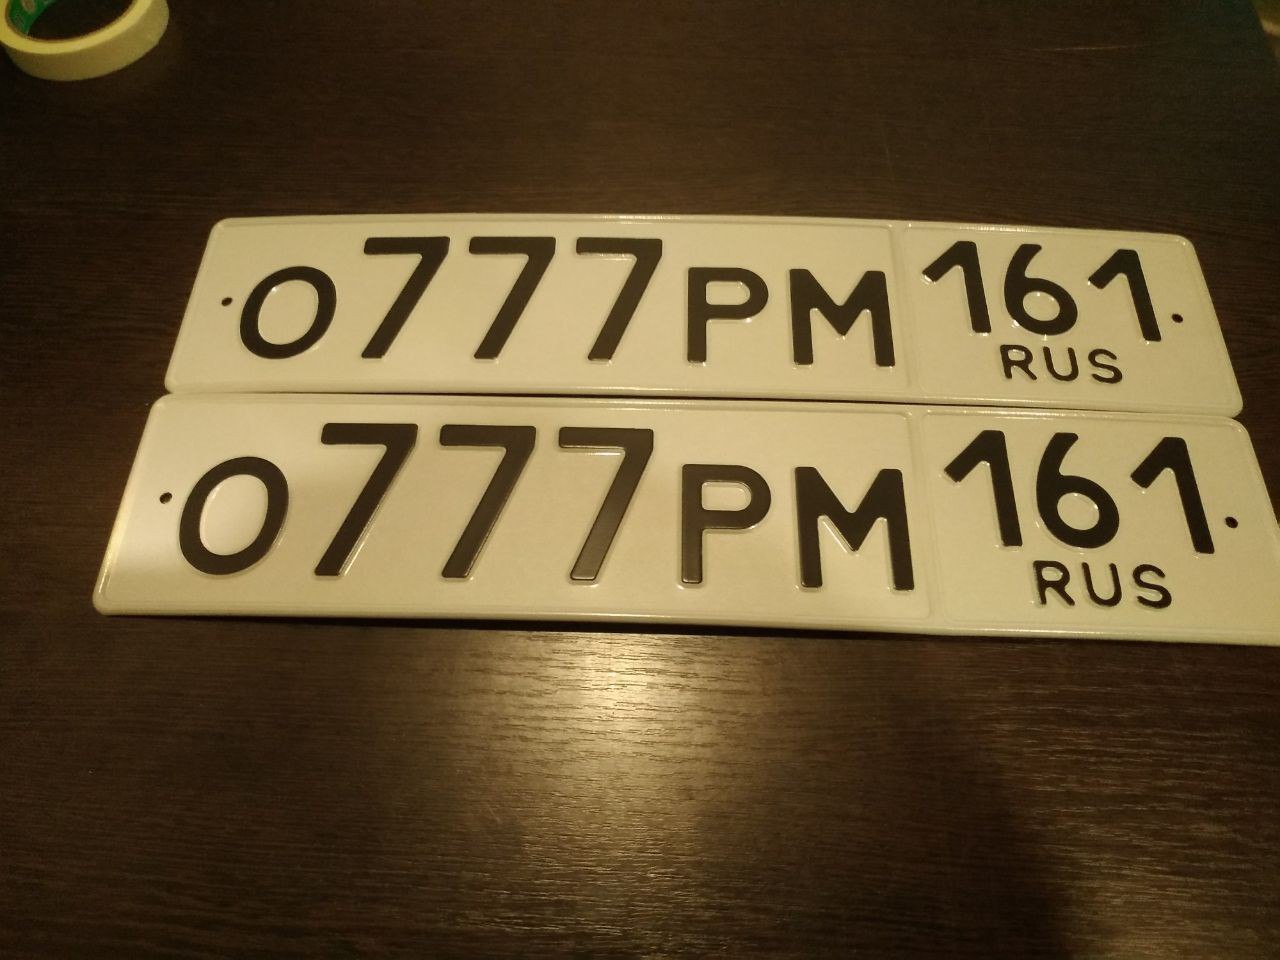 Дубликаты номеров автомобиля в москве. Дубликаты гос номеров. Дубликаты гос номеров без отверстий. Дубликаты гос номеров на авто. Подарочные номерные знаки.